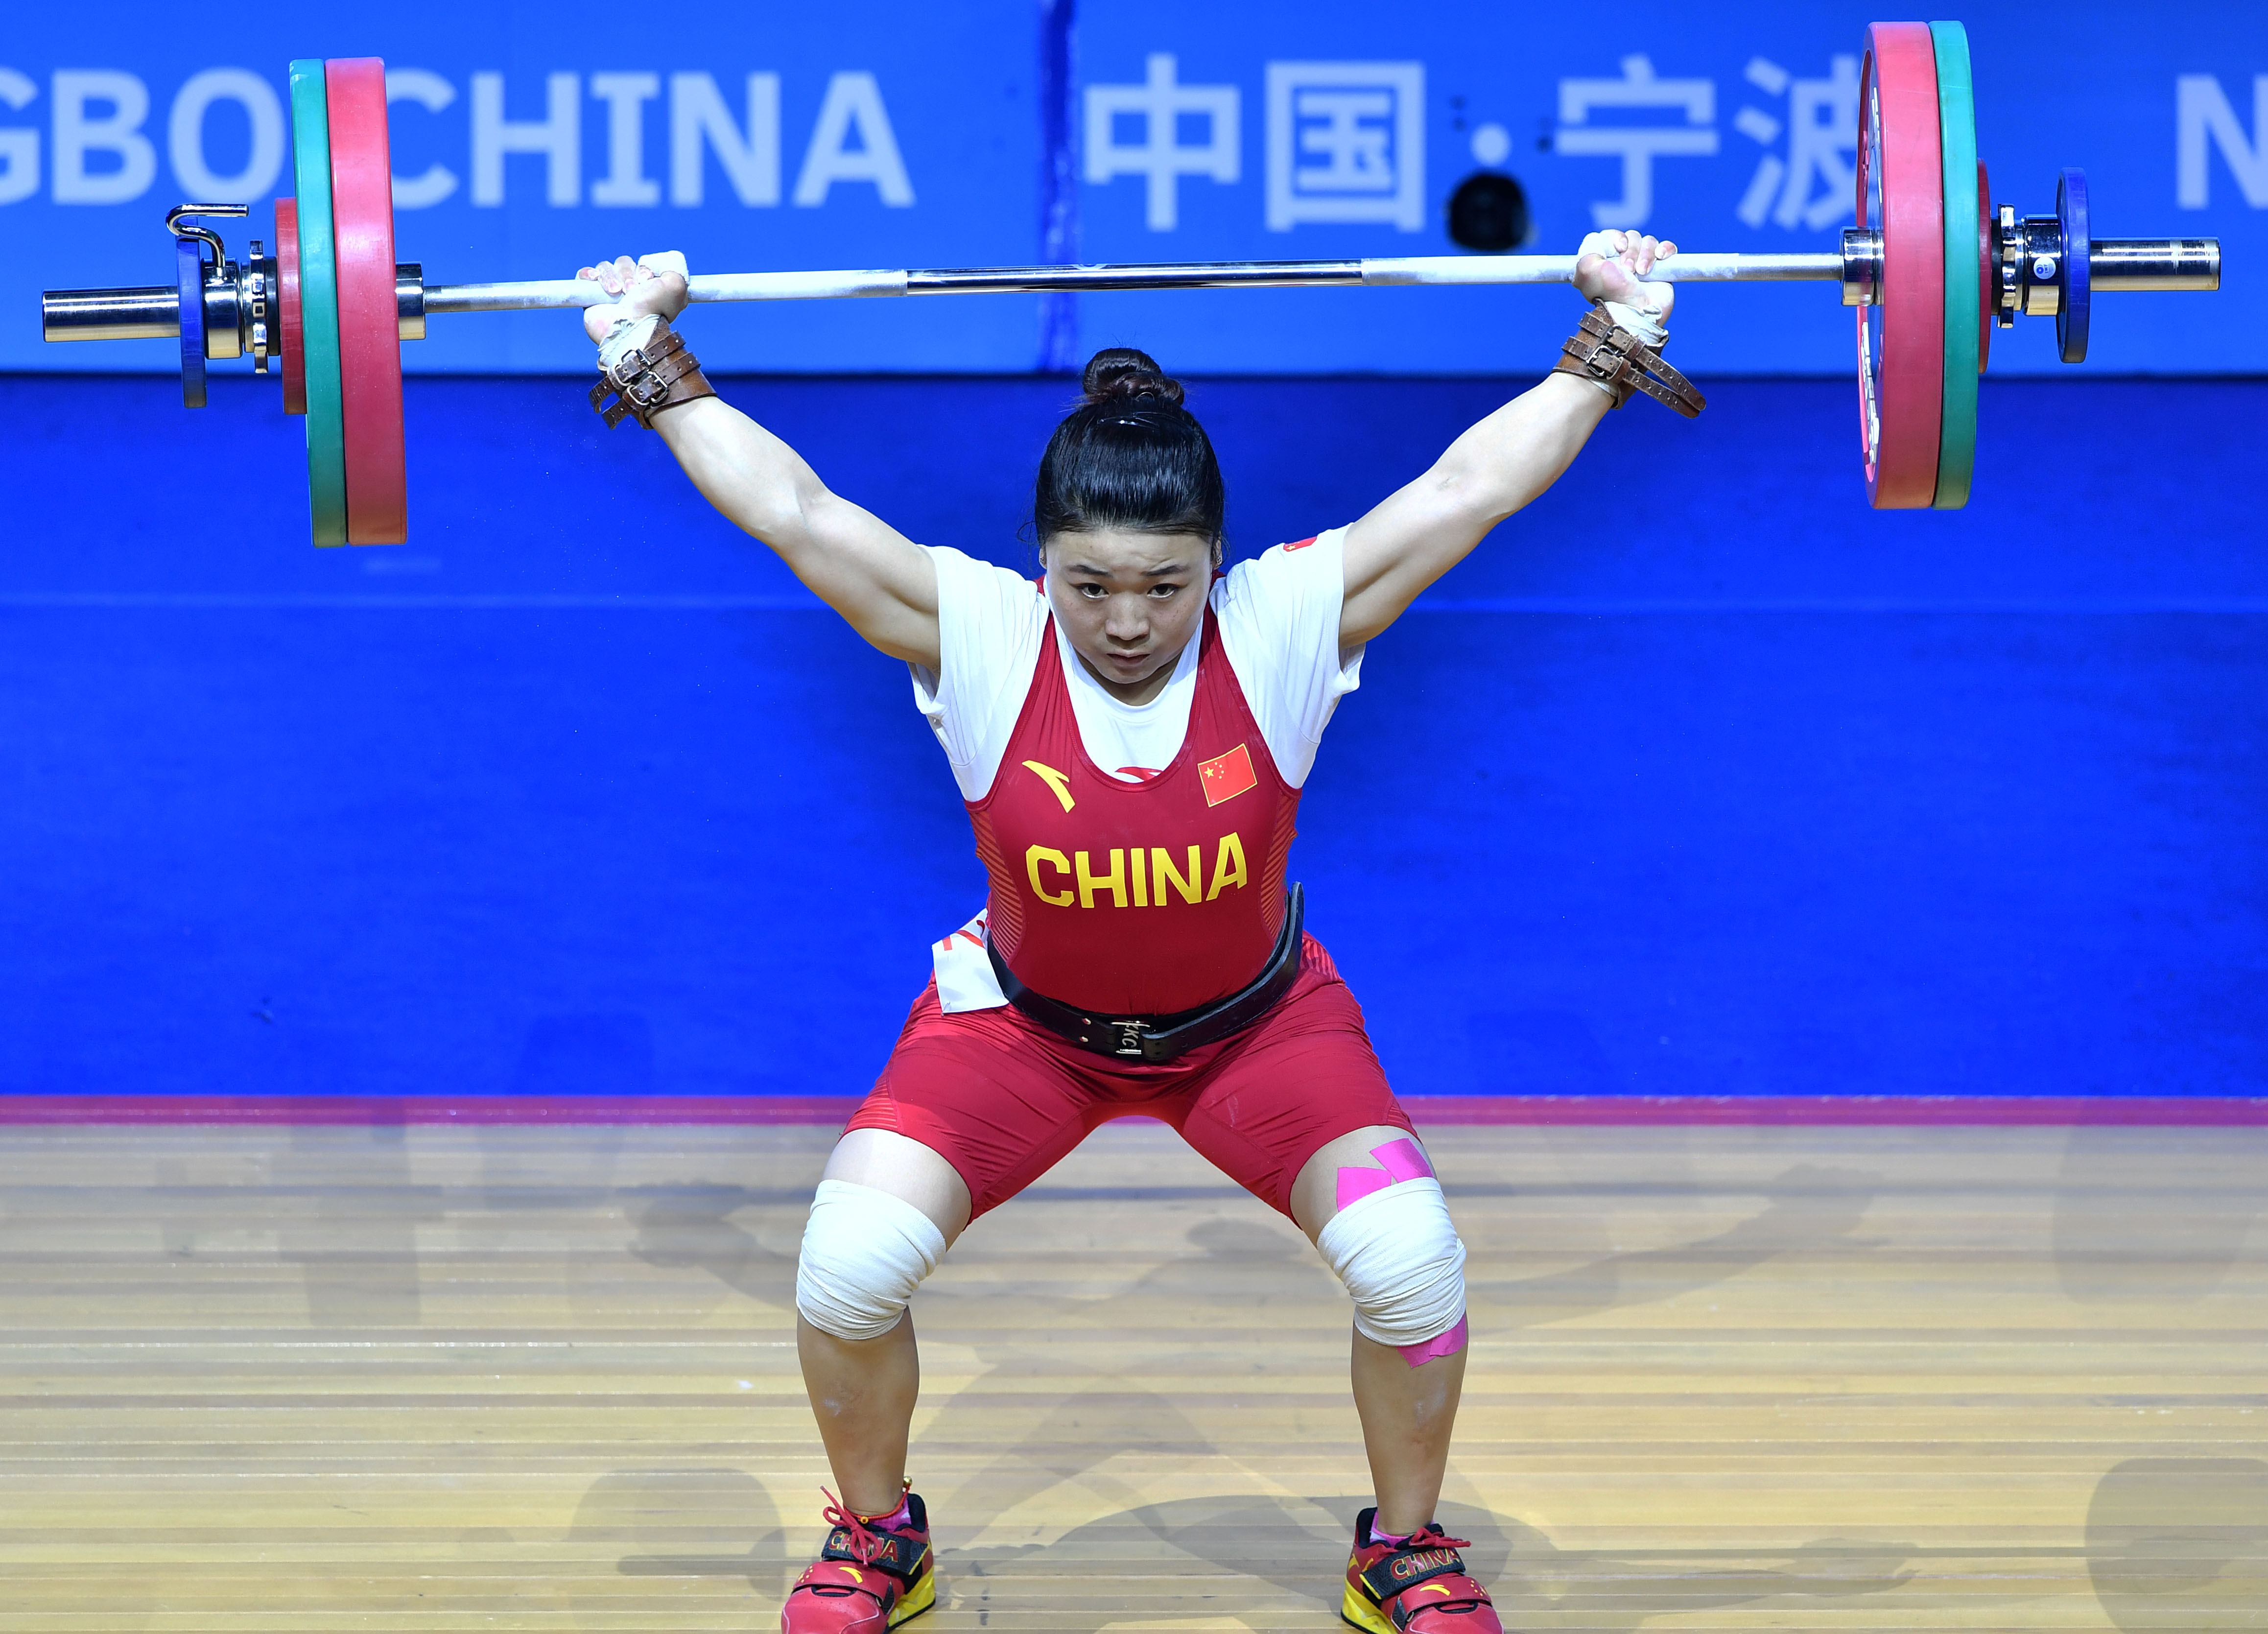 的2019年亚洲举重锦标赛暨2020年东京奥运会资格赛女子59公斤级比赛中